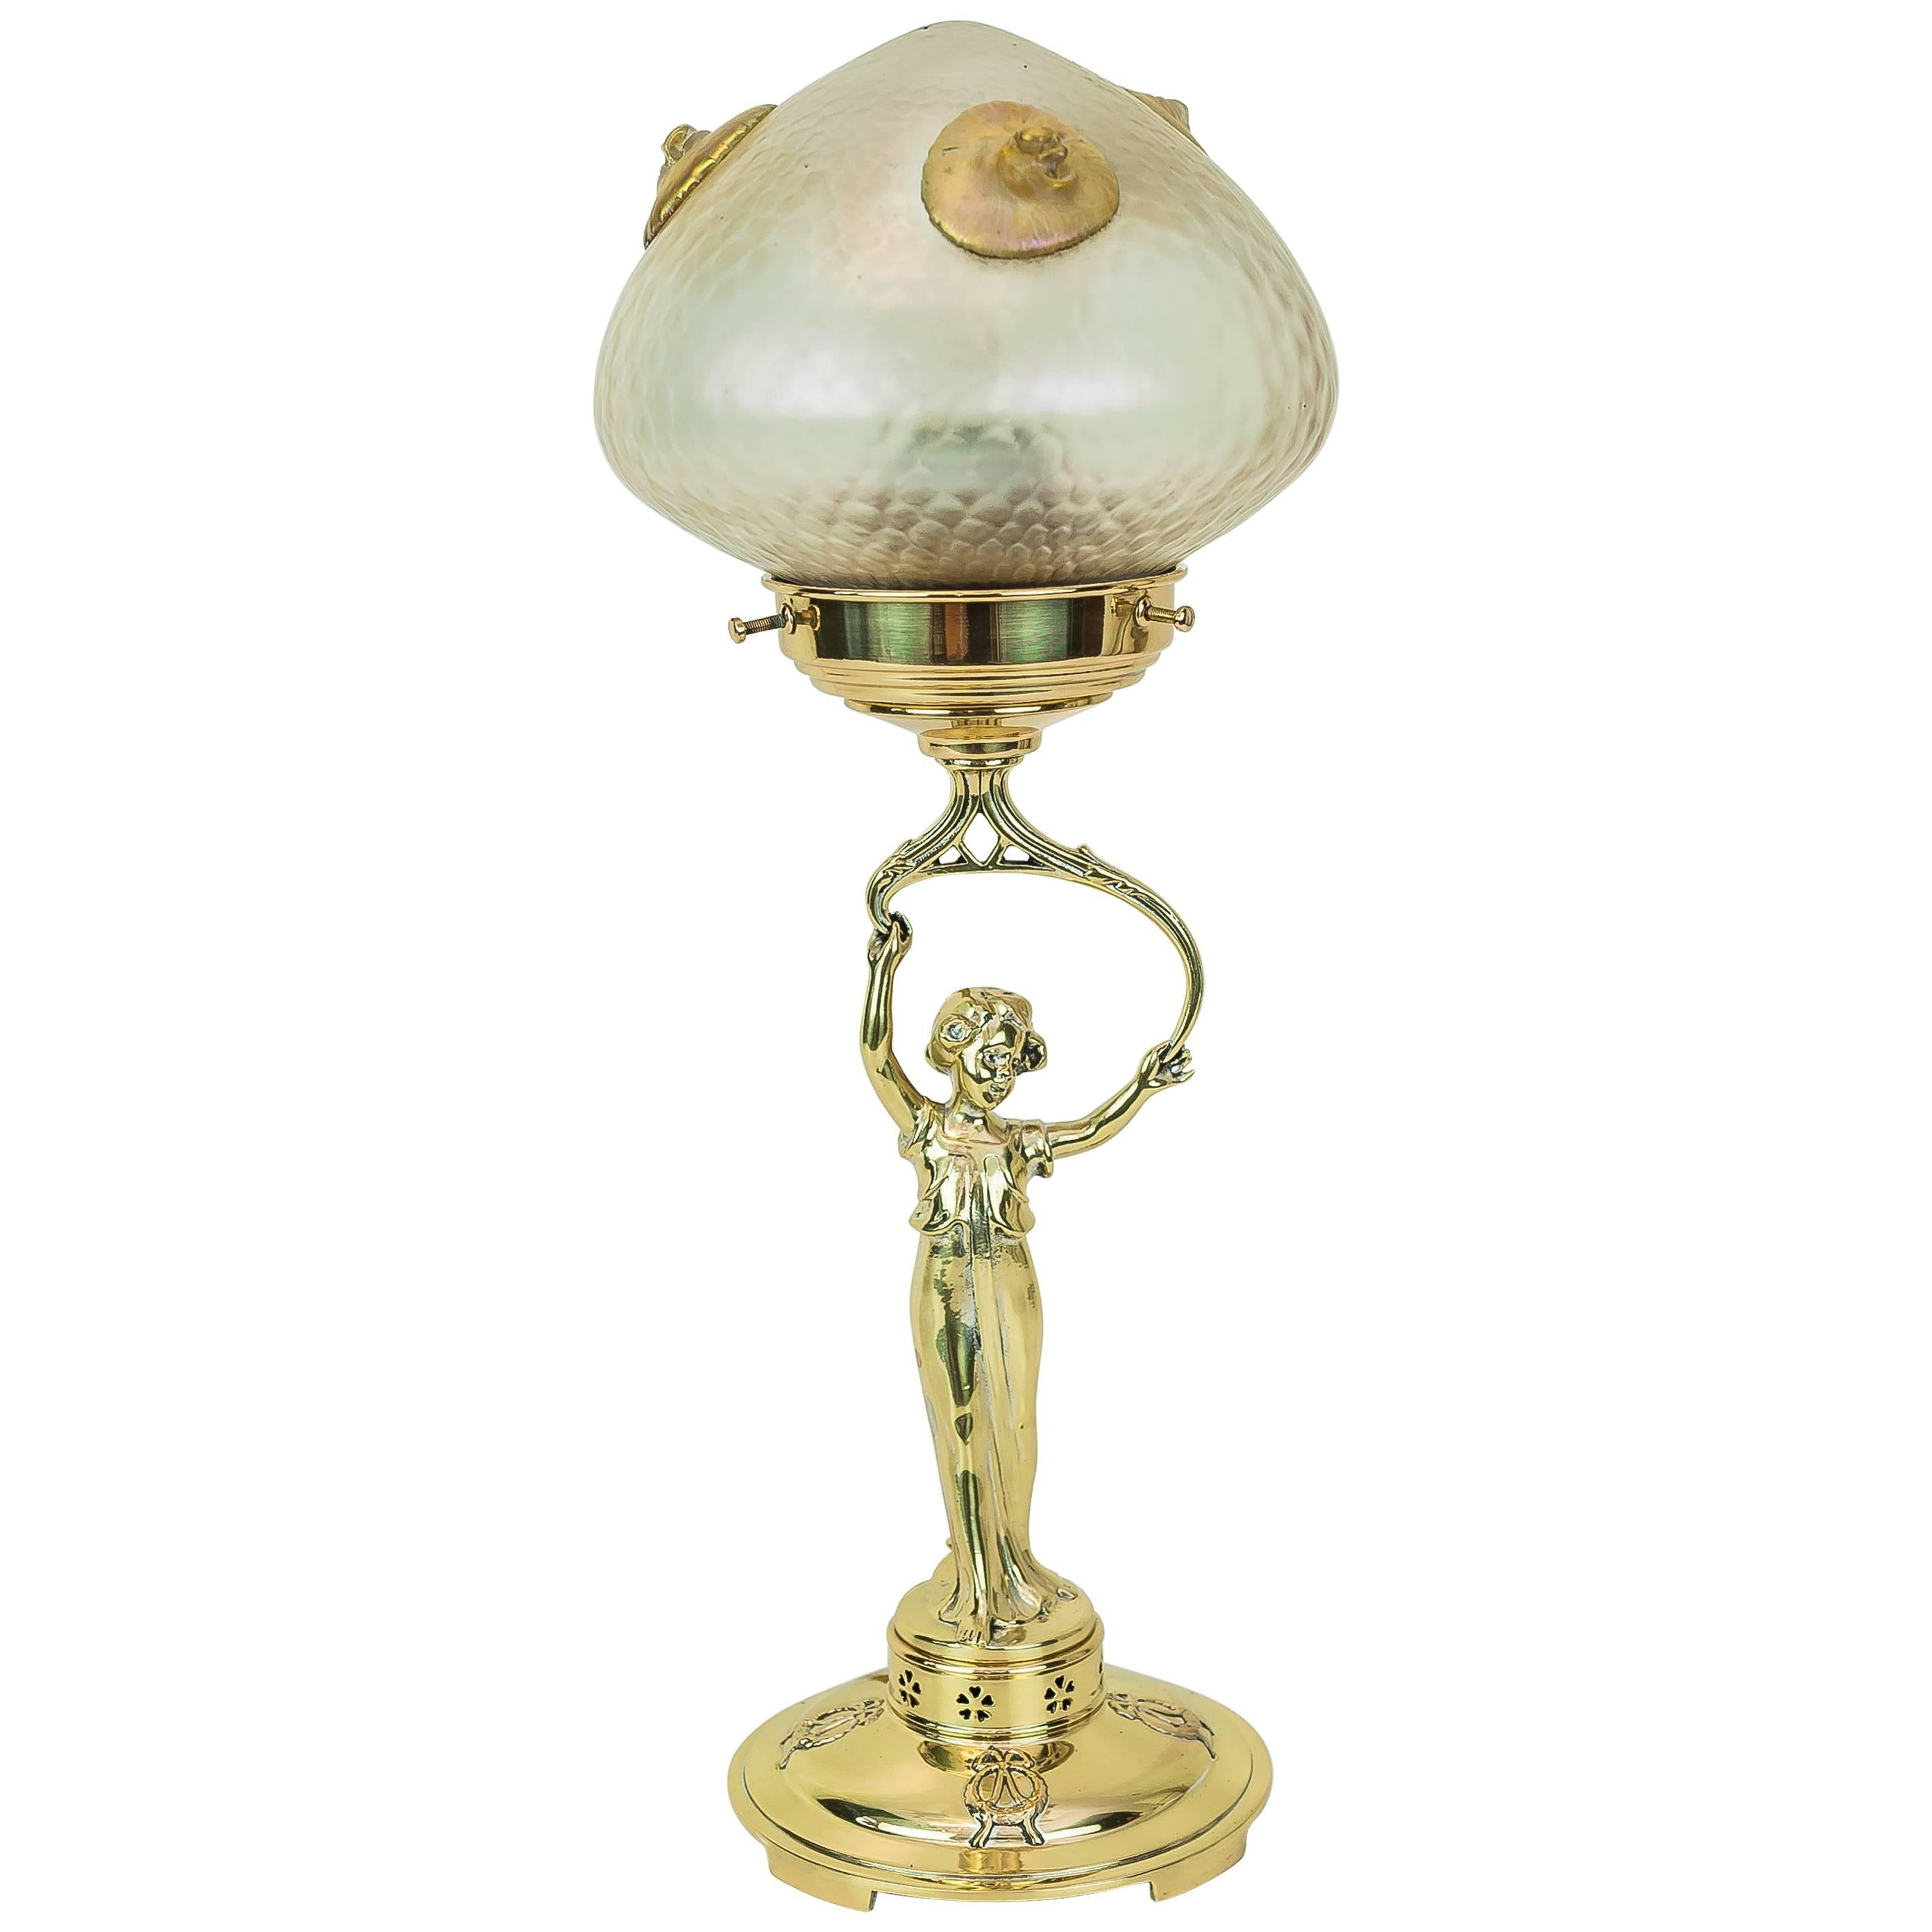 Jugendstil Table Lamp with Loetz Glass Shade